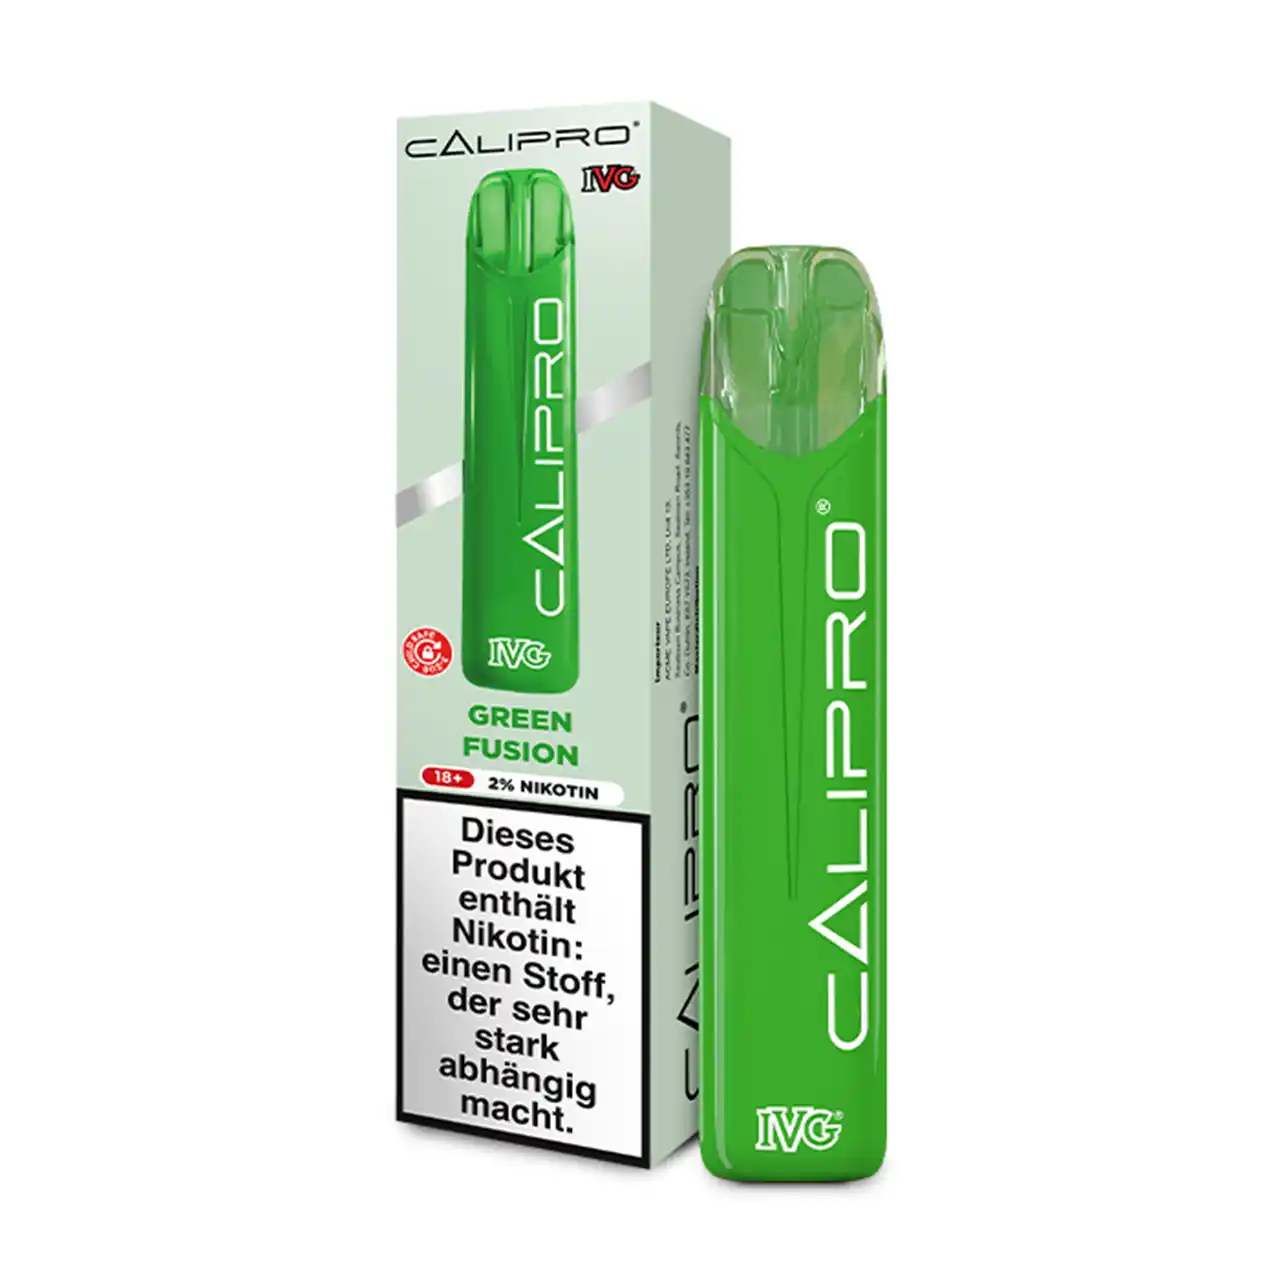 IVG Calipro Green Fusion mit Verpackung